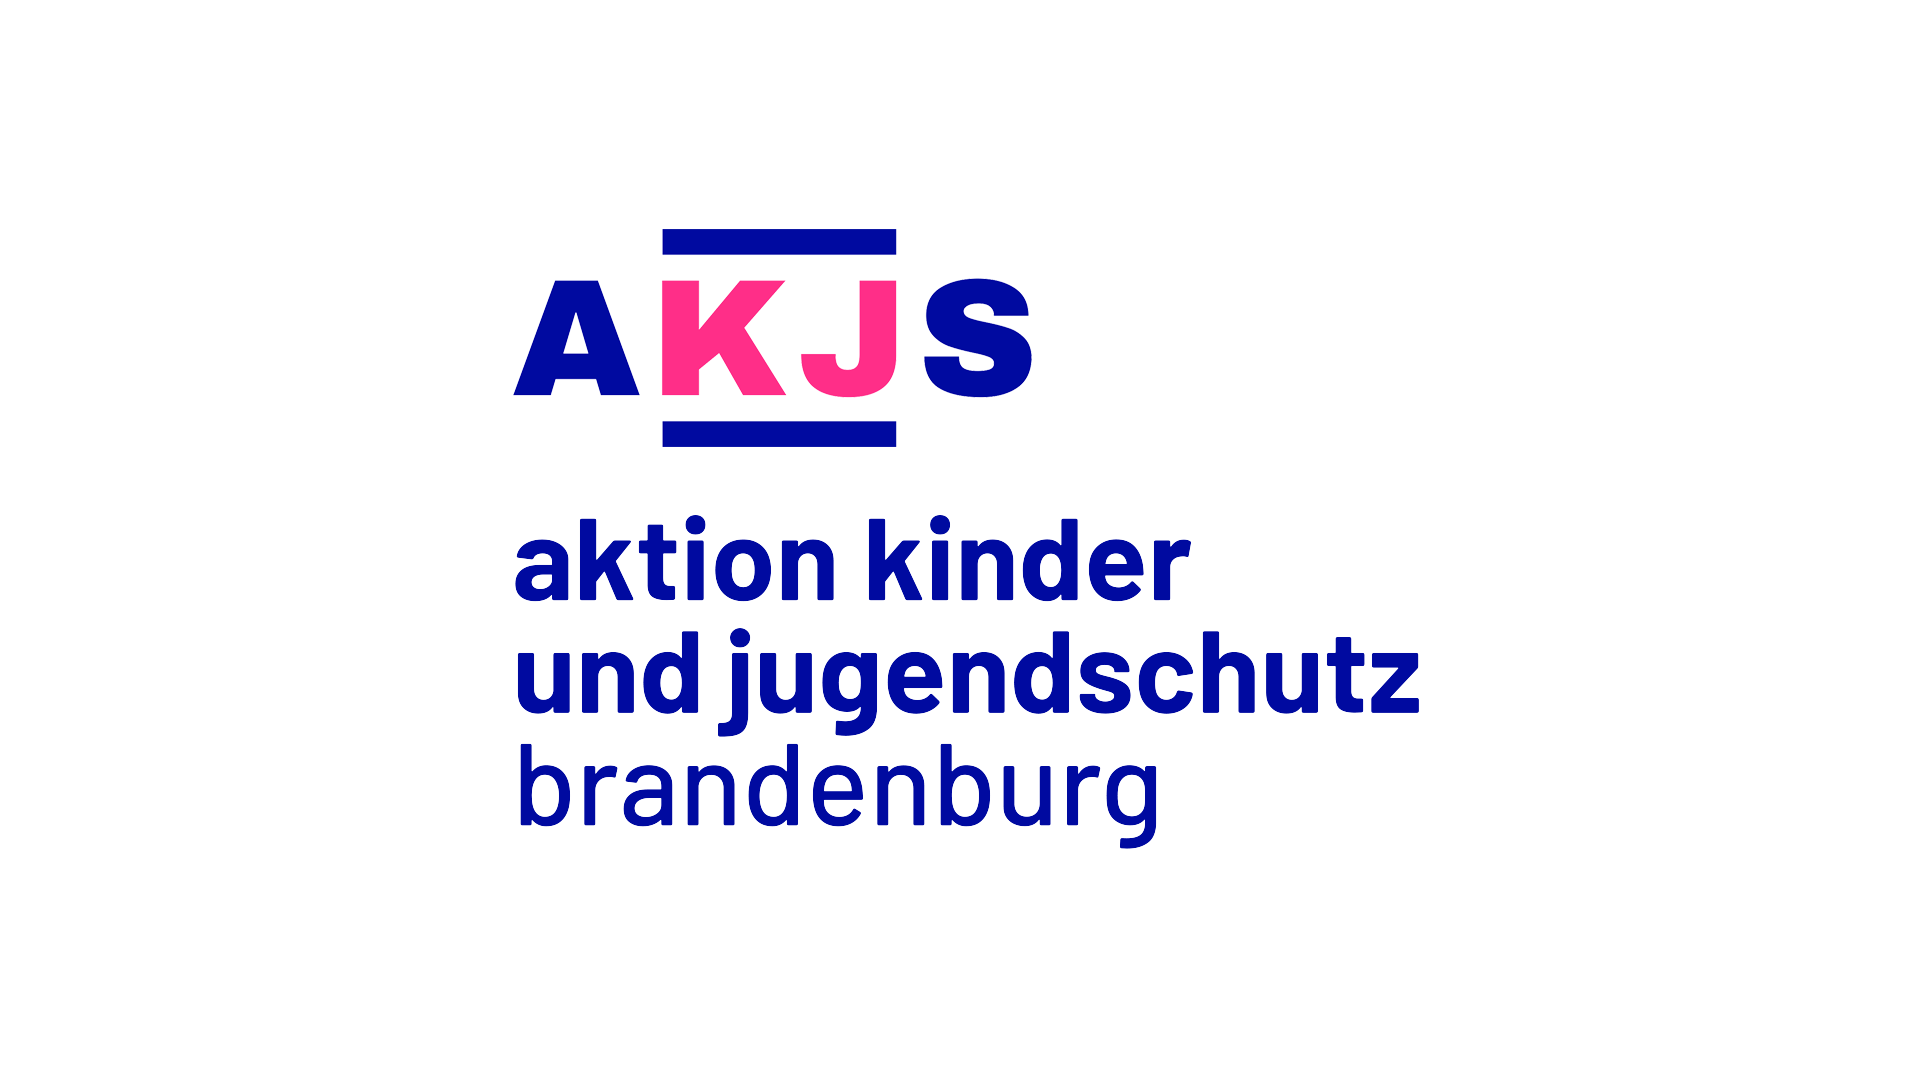 kakoii launcht Jugendschutzkampagne gegen Gewalt und Vernachlässigung